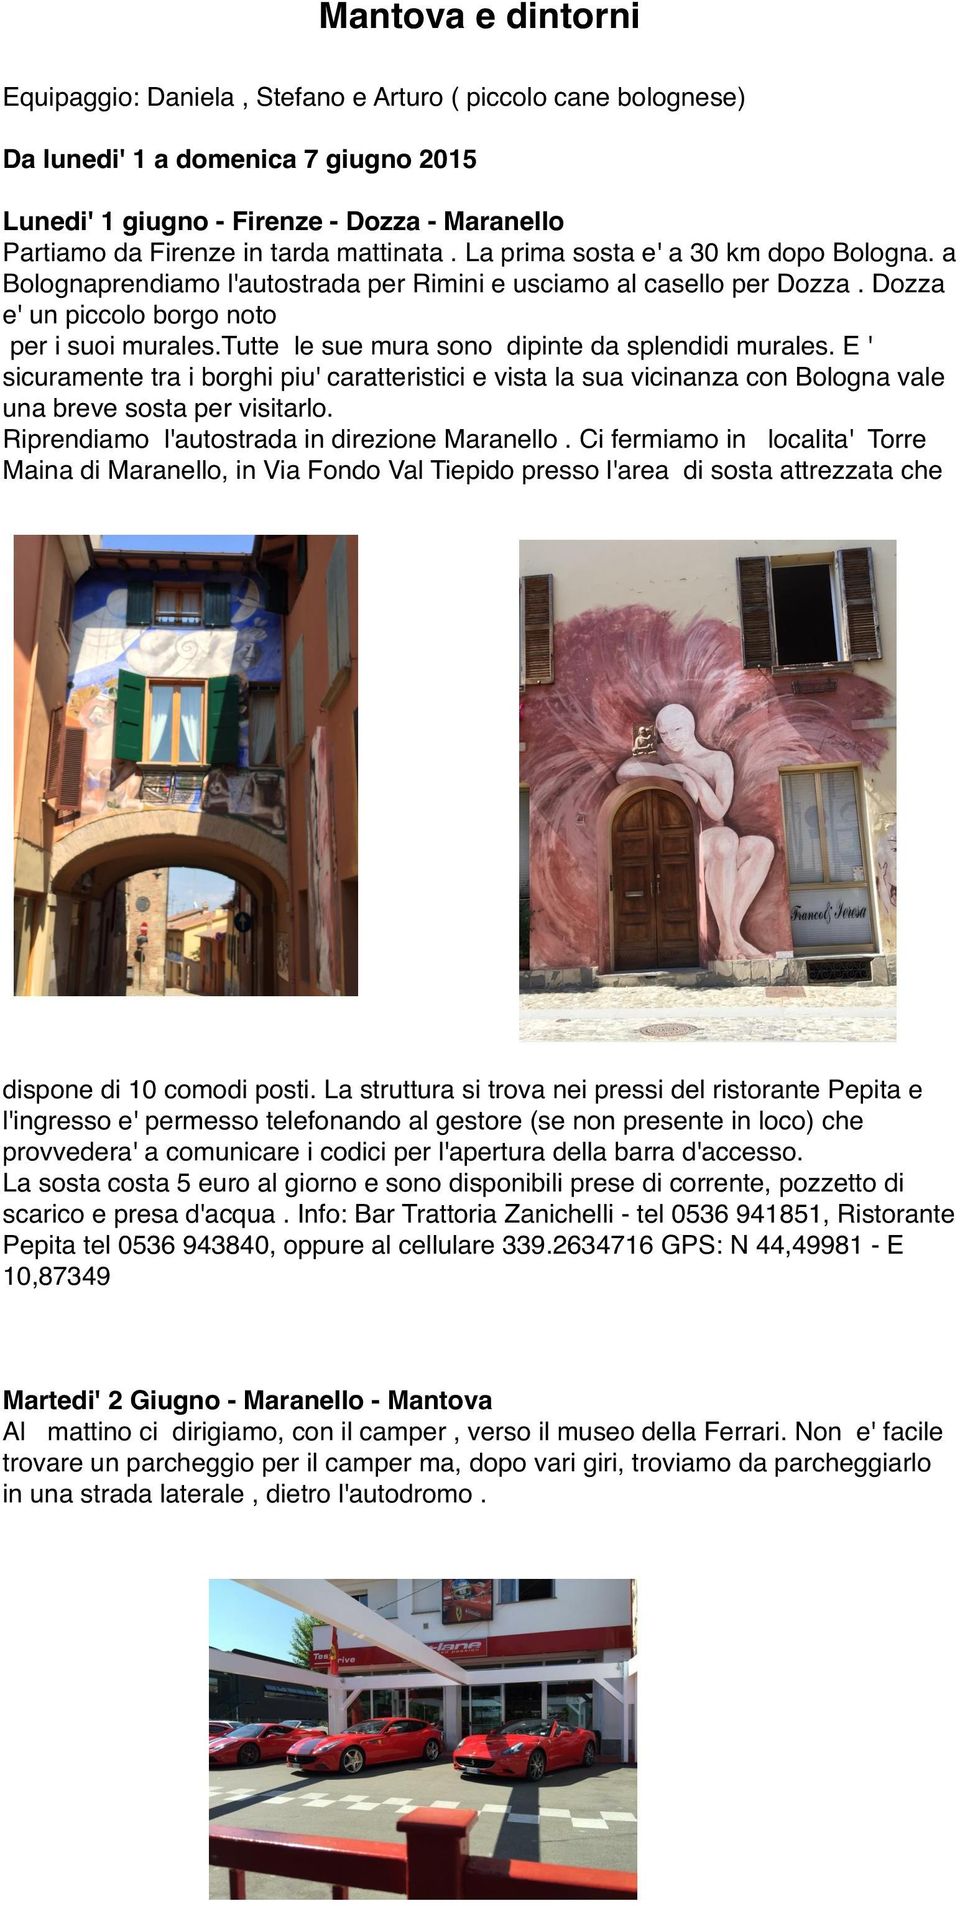 tutte le sue mura sono dipinte da splendidi murales. E ' sicuramente tra i borghi piu' caratteristici e vista la sua vicinanza con Bologna vale una breve sosta per visitarlo.